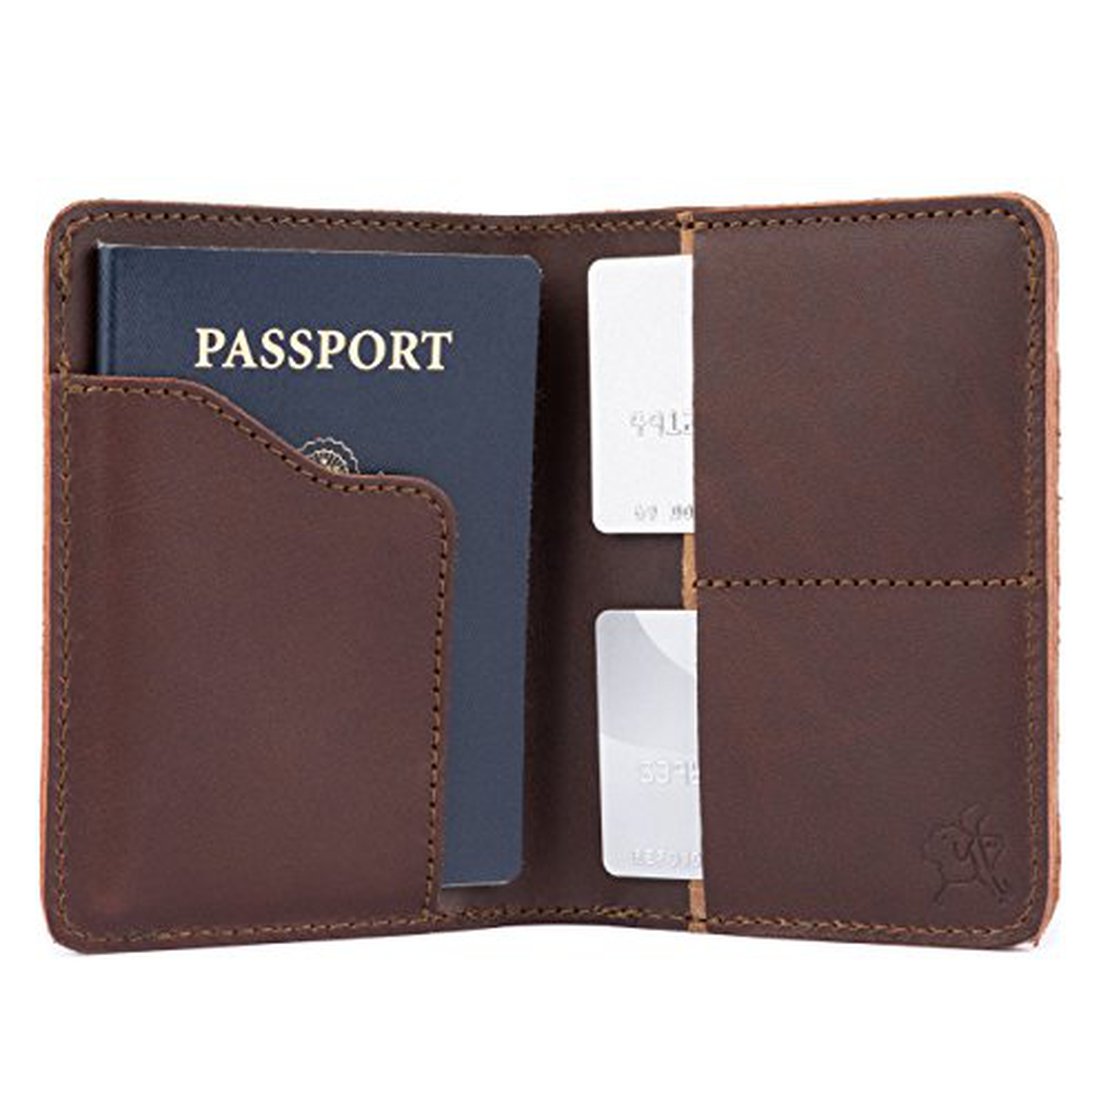 5 Best Passport Wallet Designs for 2018 | LeatherWallets.org